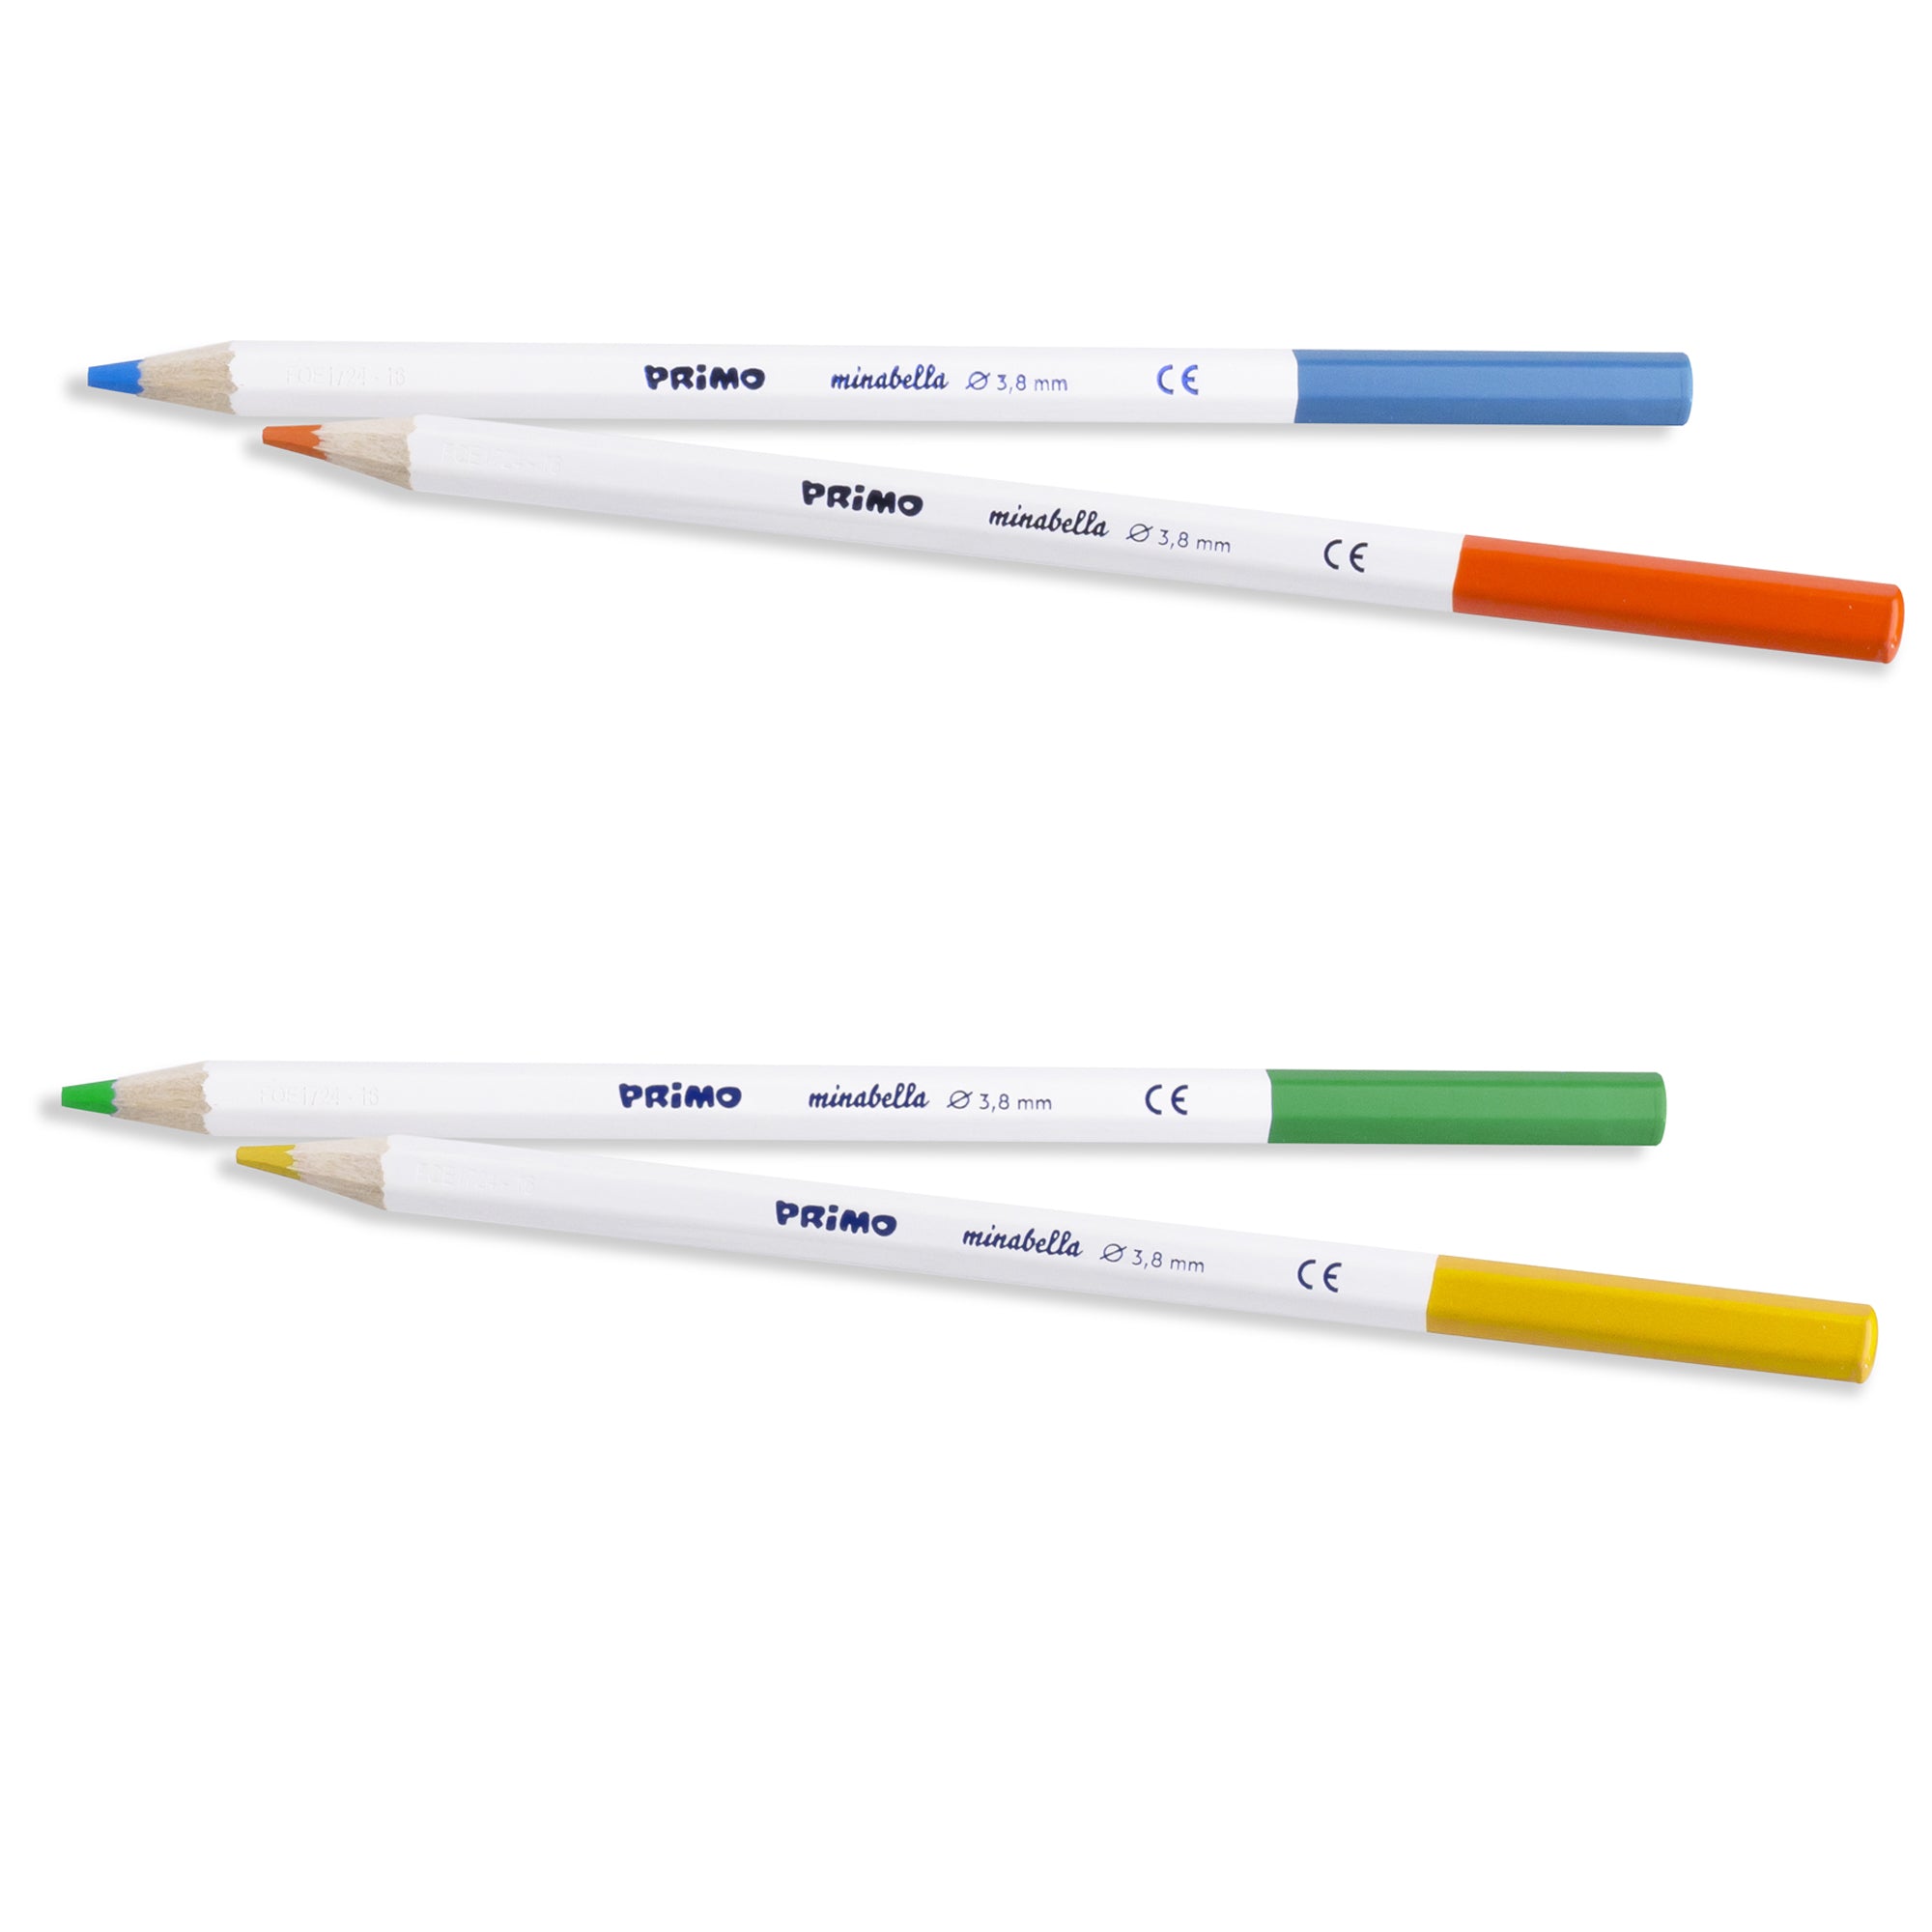 primo-morocolor-astuccio-24-matite-colorate-diam-3-8mm-minabella-primo